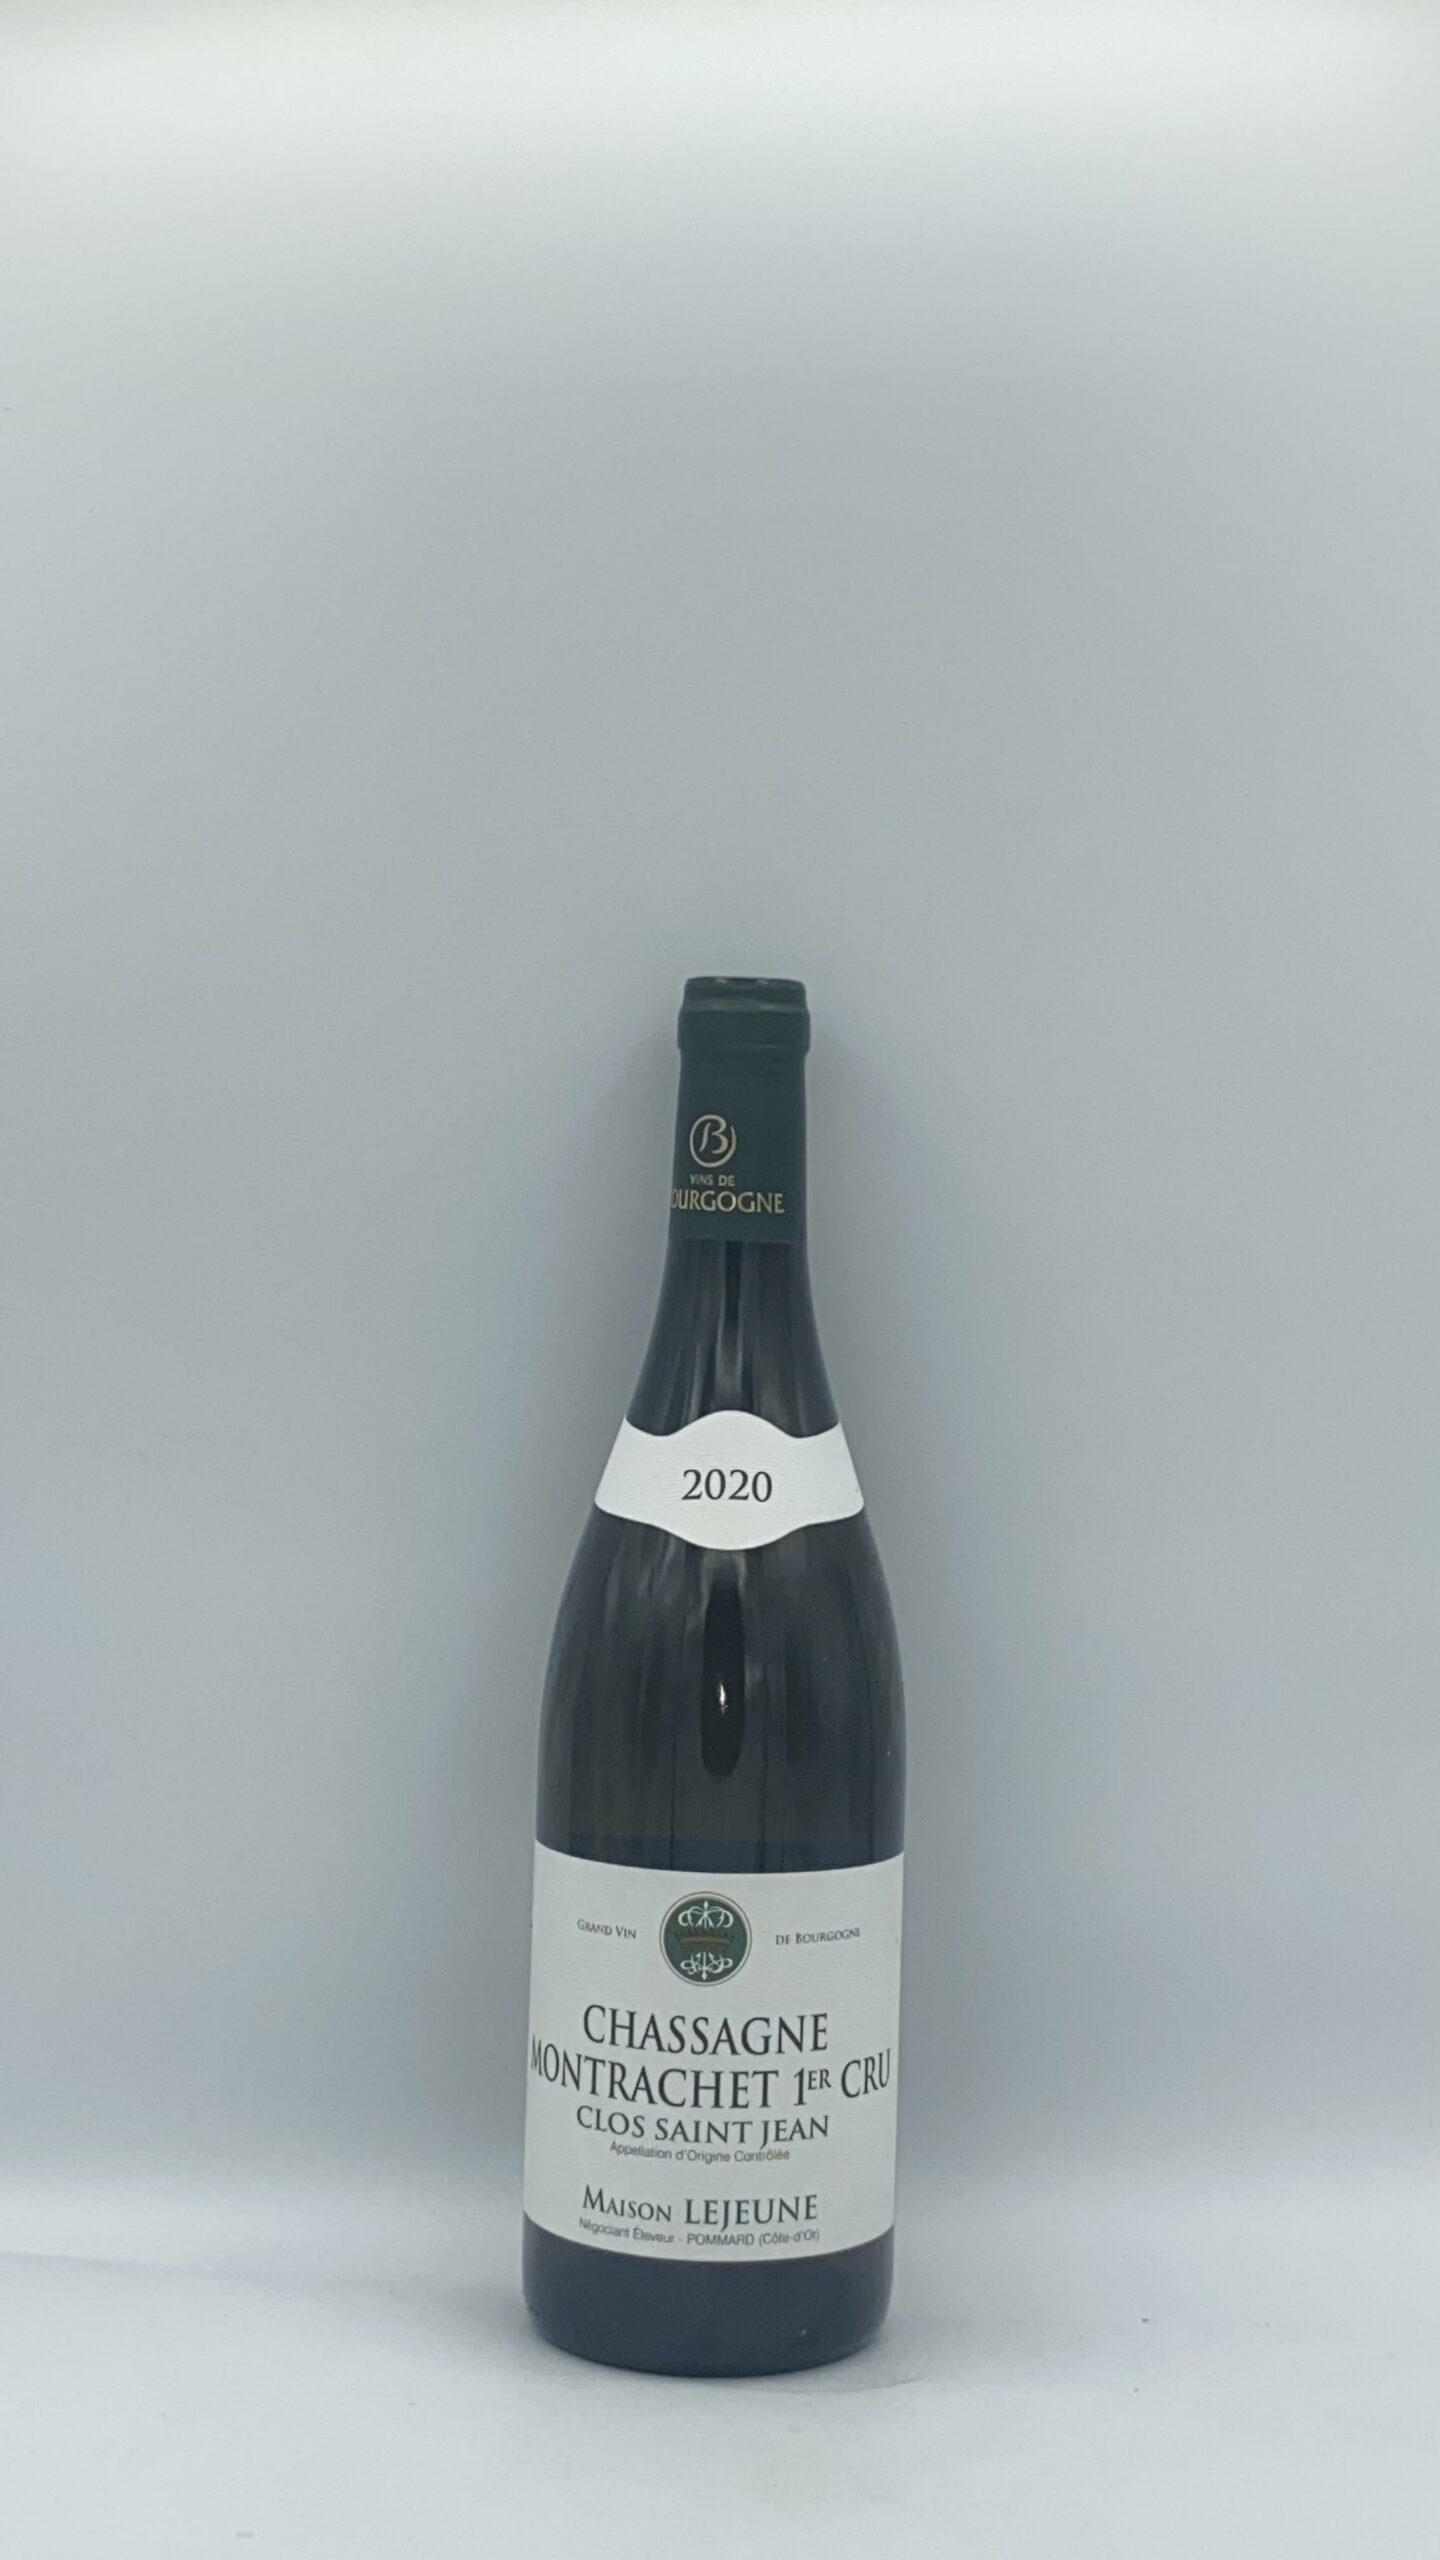 Bourgogne Chassagne-Montrachet 1er cru “Clos Saint Jean” 2020 Domaine Lejeune